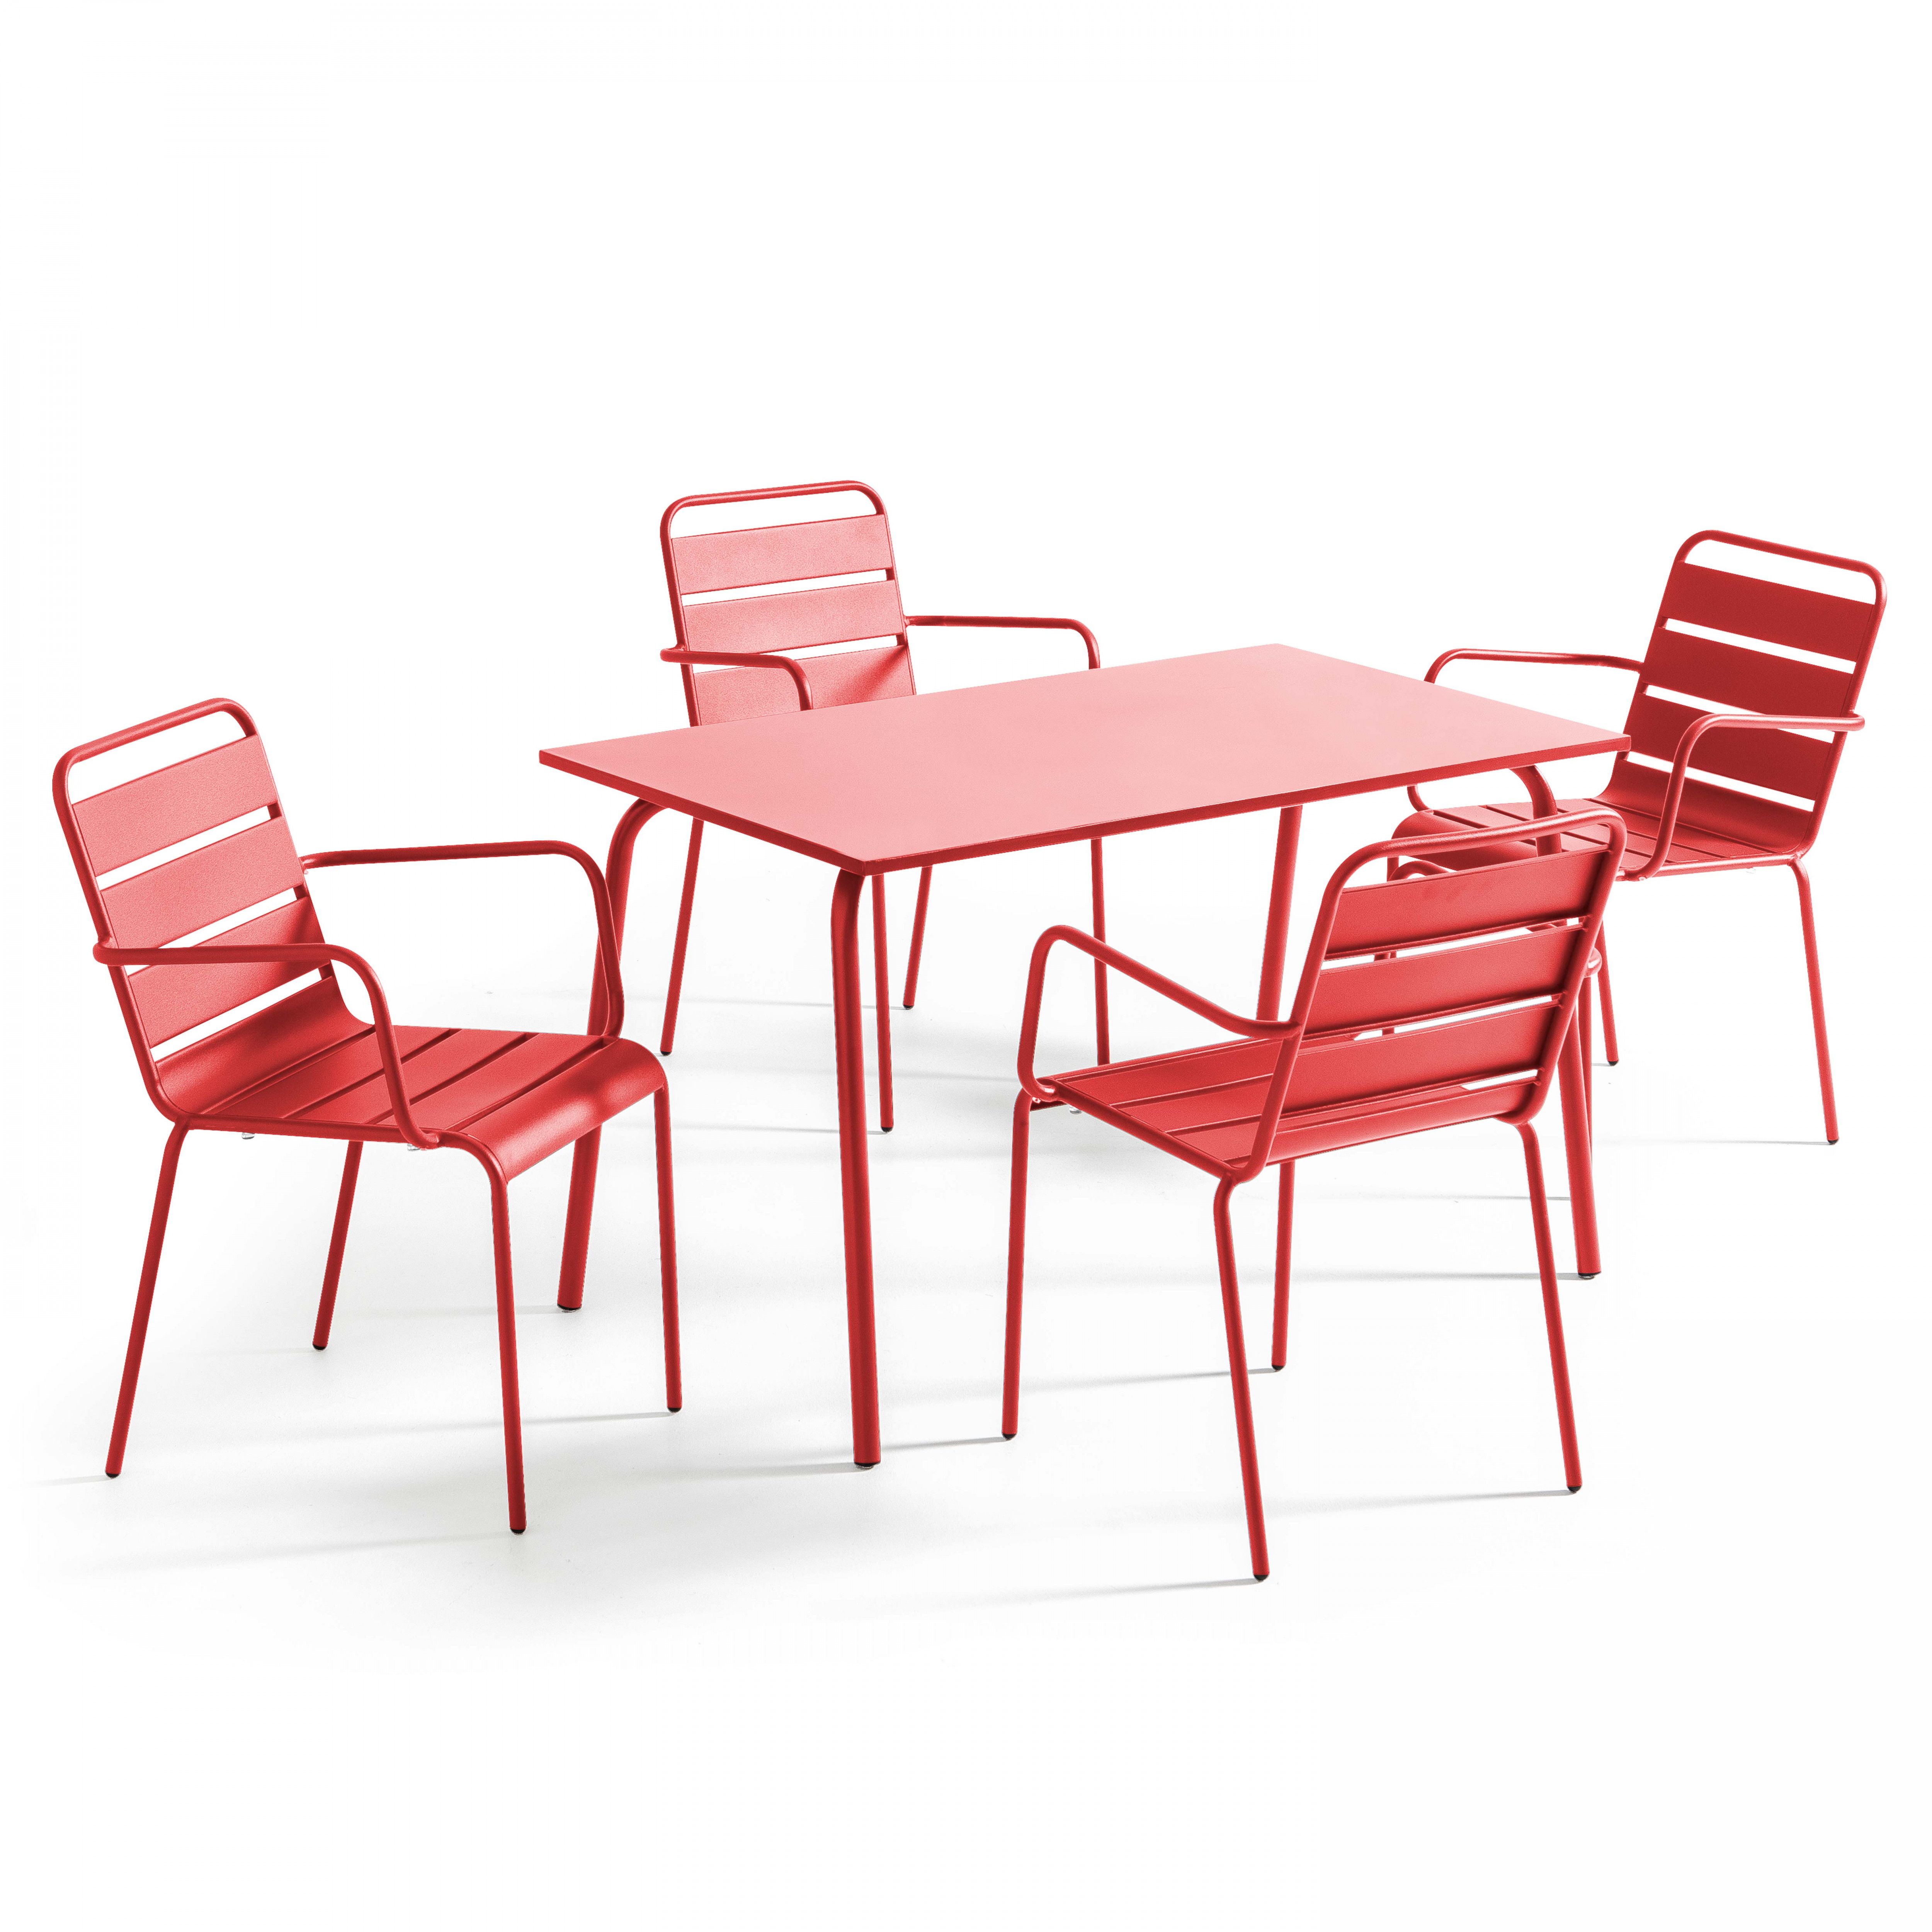 Ensemble table rectangulaire (120 x 70 x 72 cm) et 4 chaises avec accoudoirs